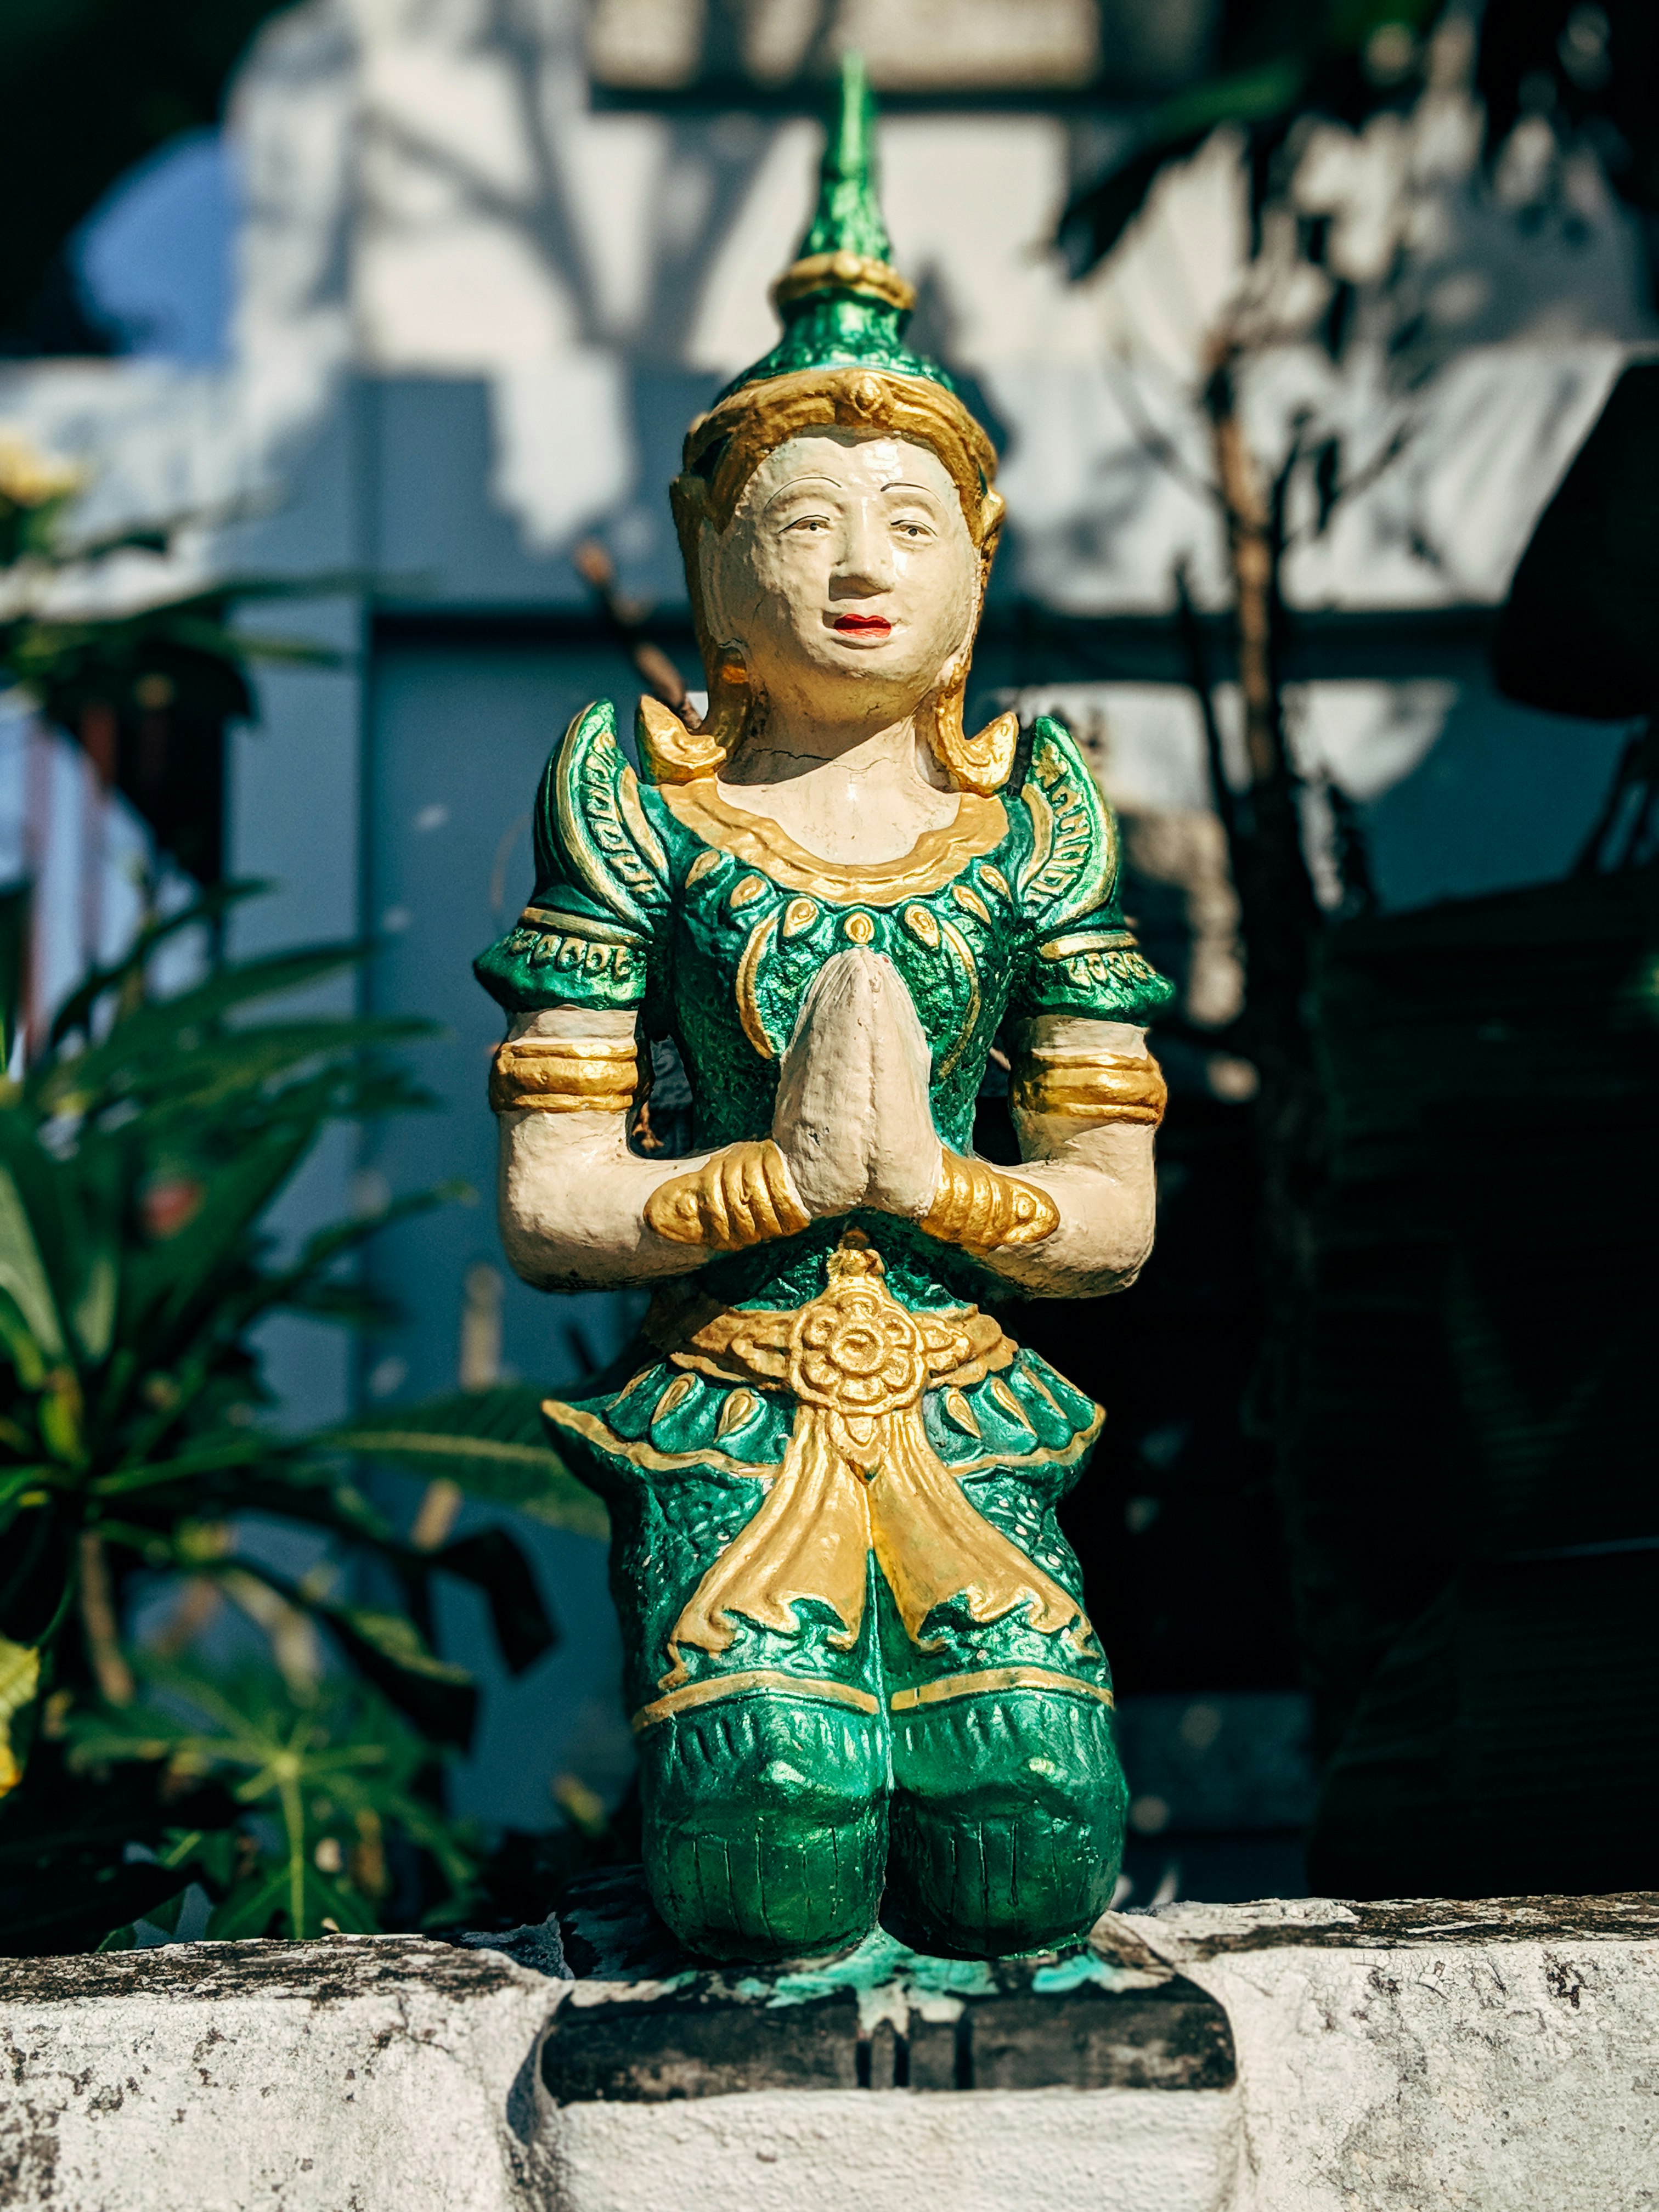 green and yellow ceramic buddha figurine